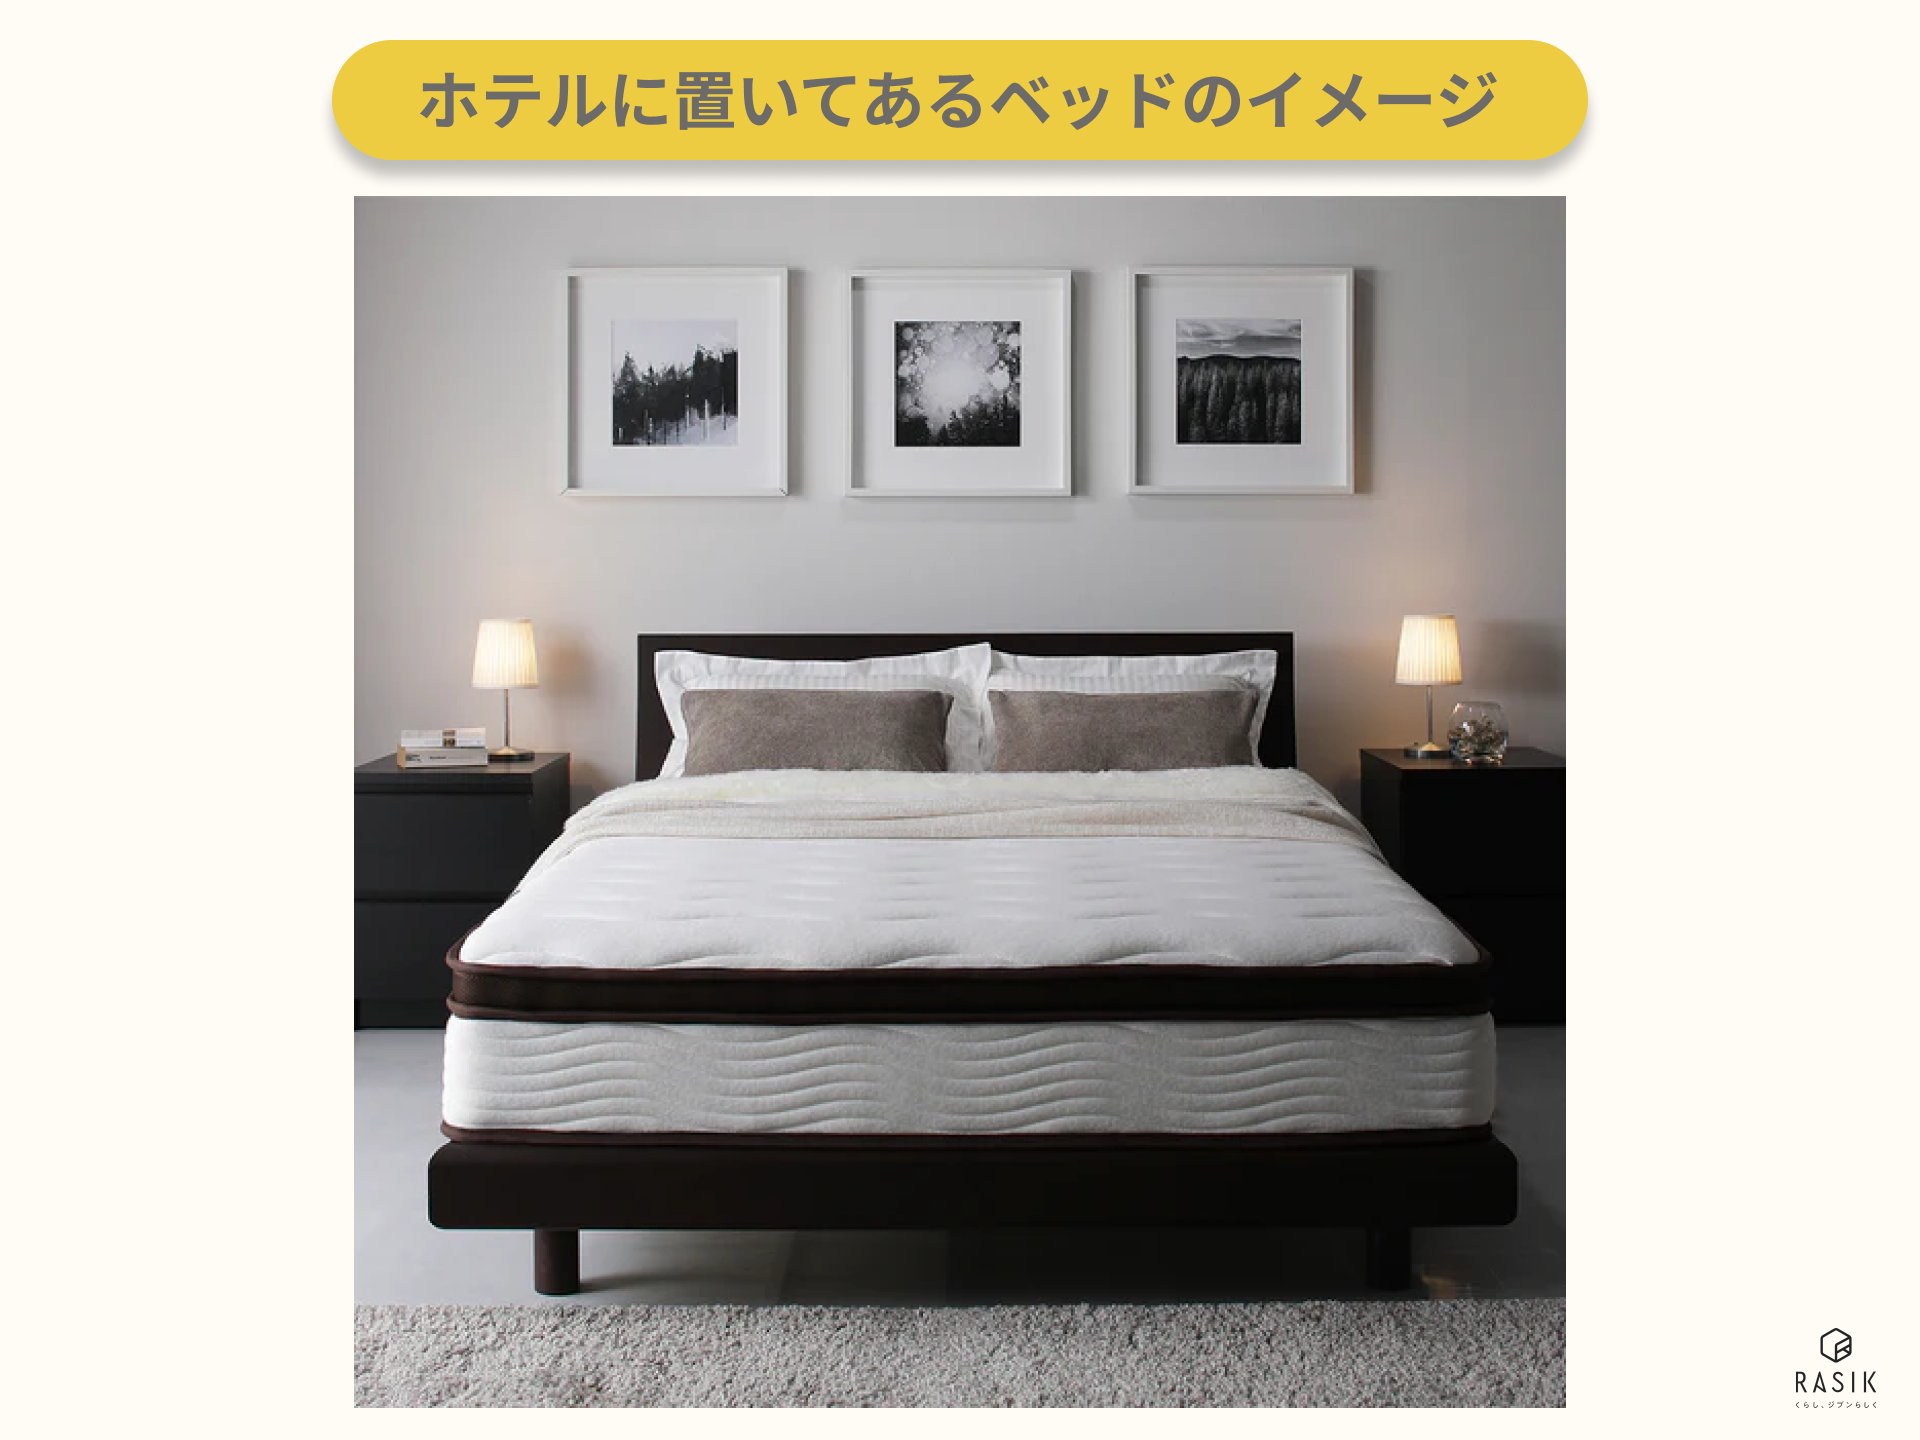 ホテルに置いてあるベッドのイメージ